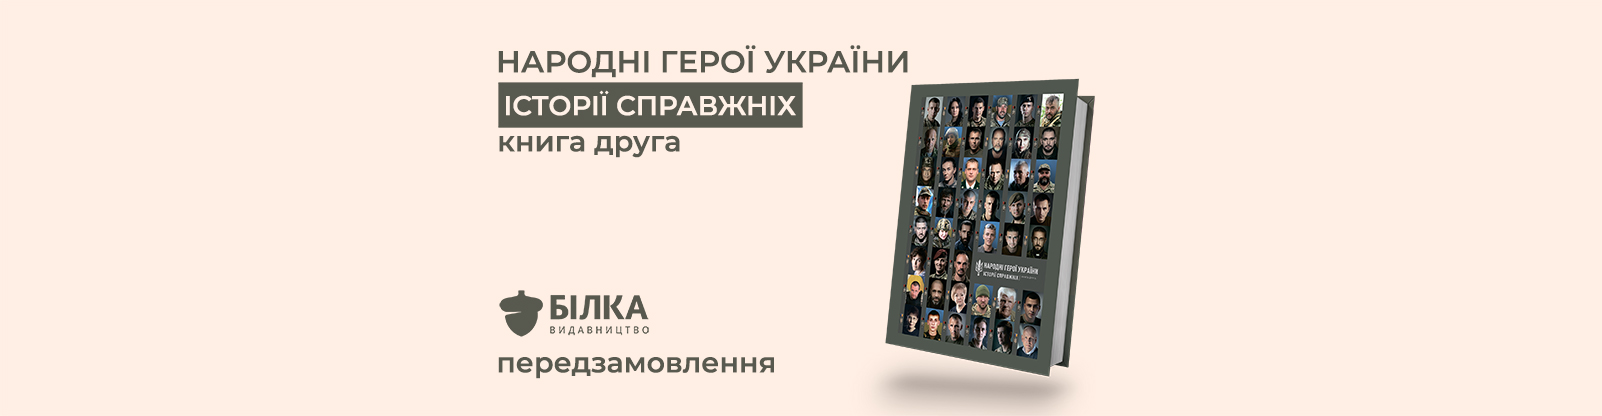 народні герої україни книга частина друга